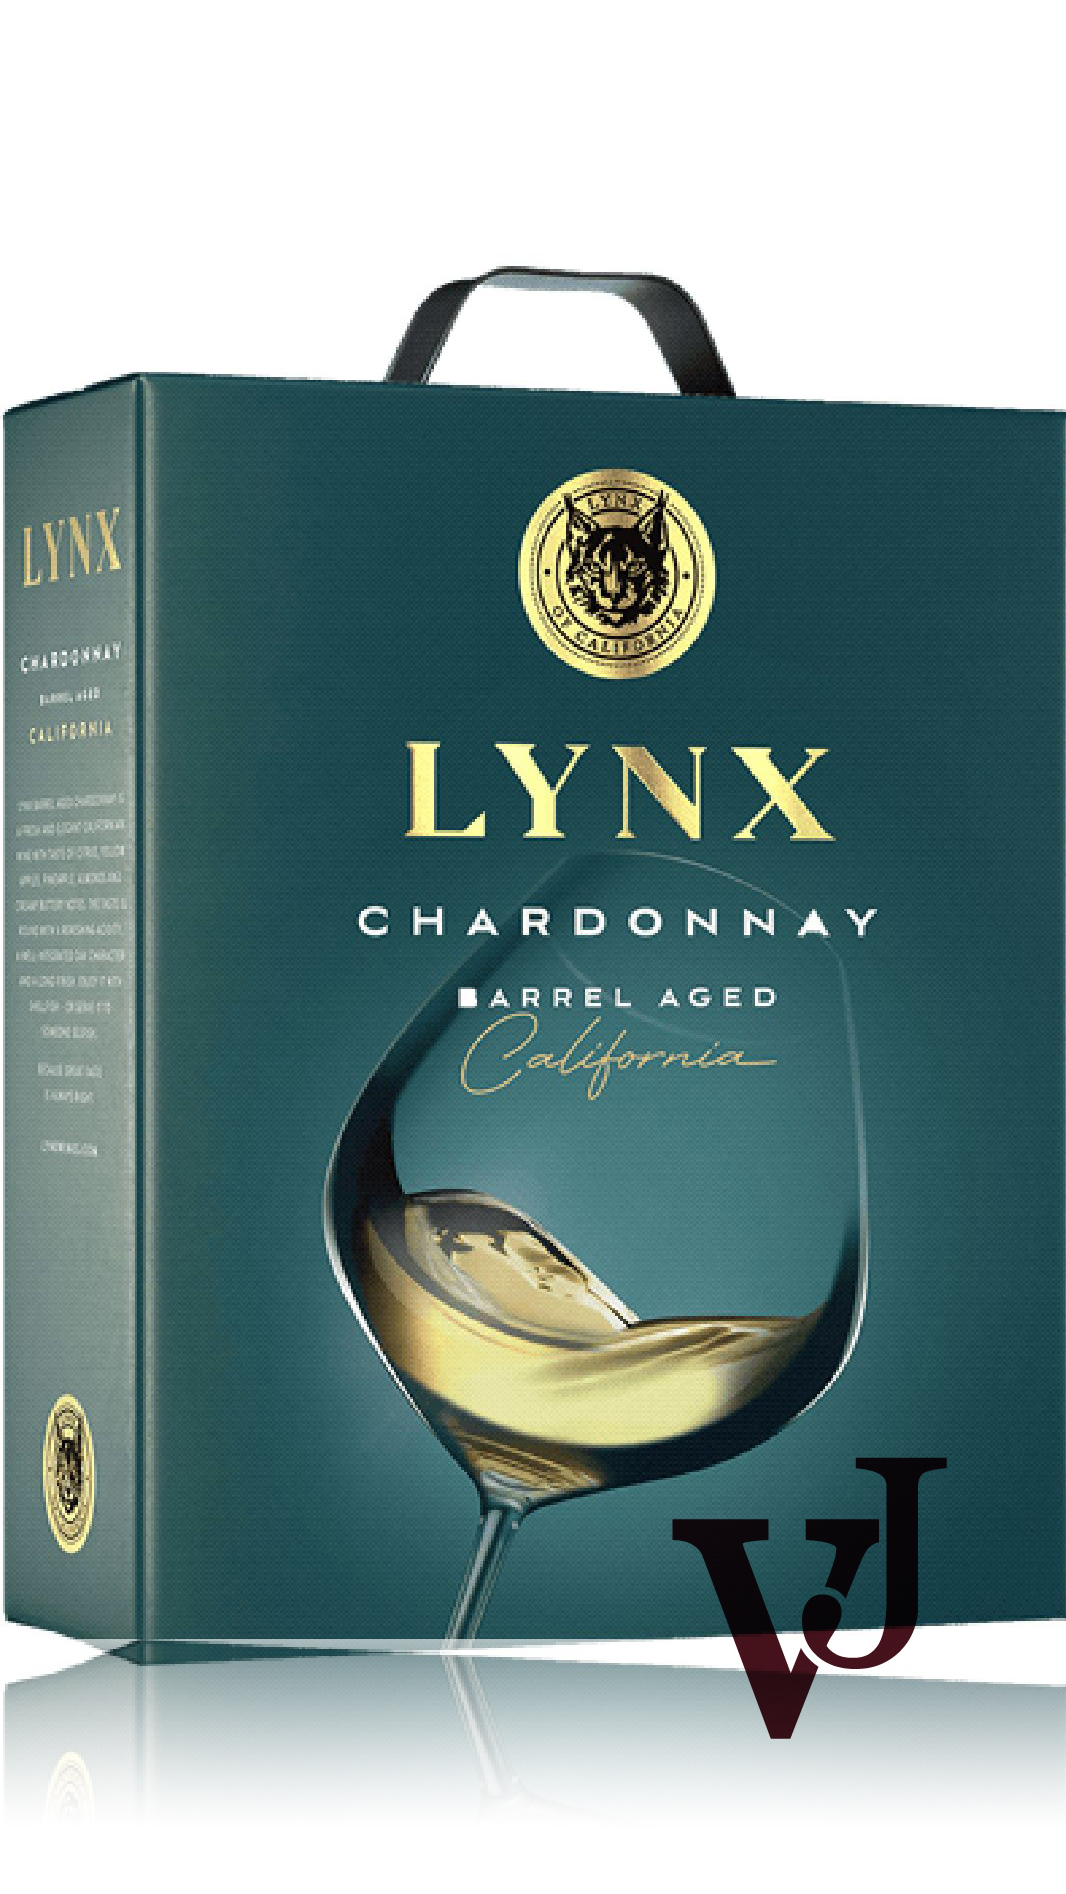 Vitt Vin - Lynx Chardonnay Barrel-aged artikel nummer 5020708 från producenten House of Big Wines från området USA